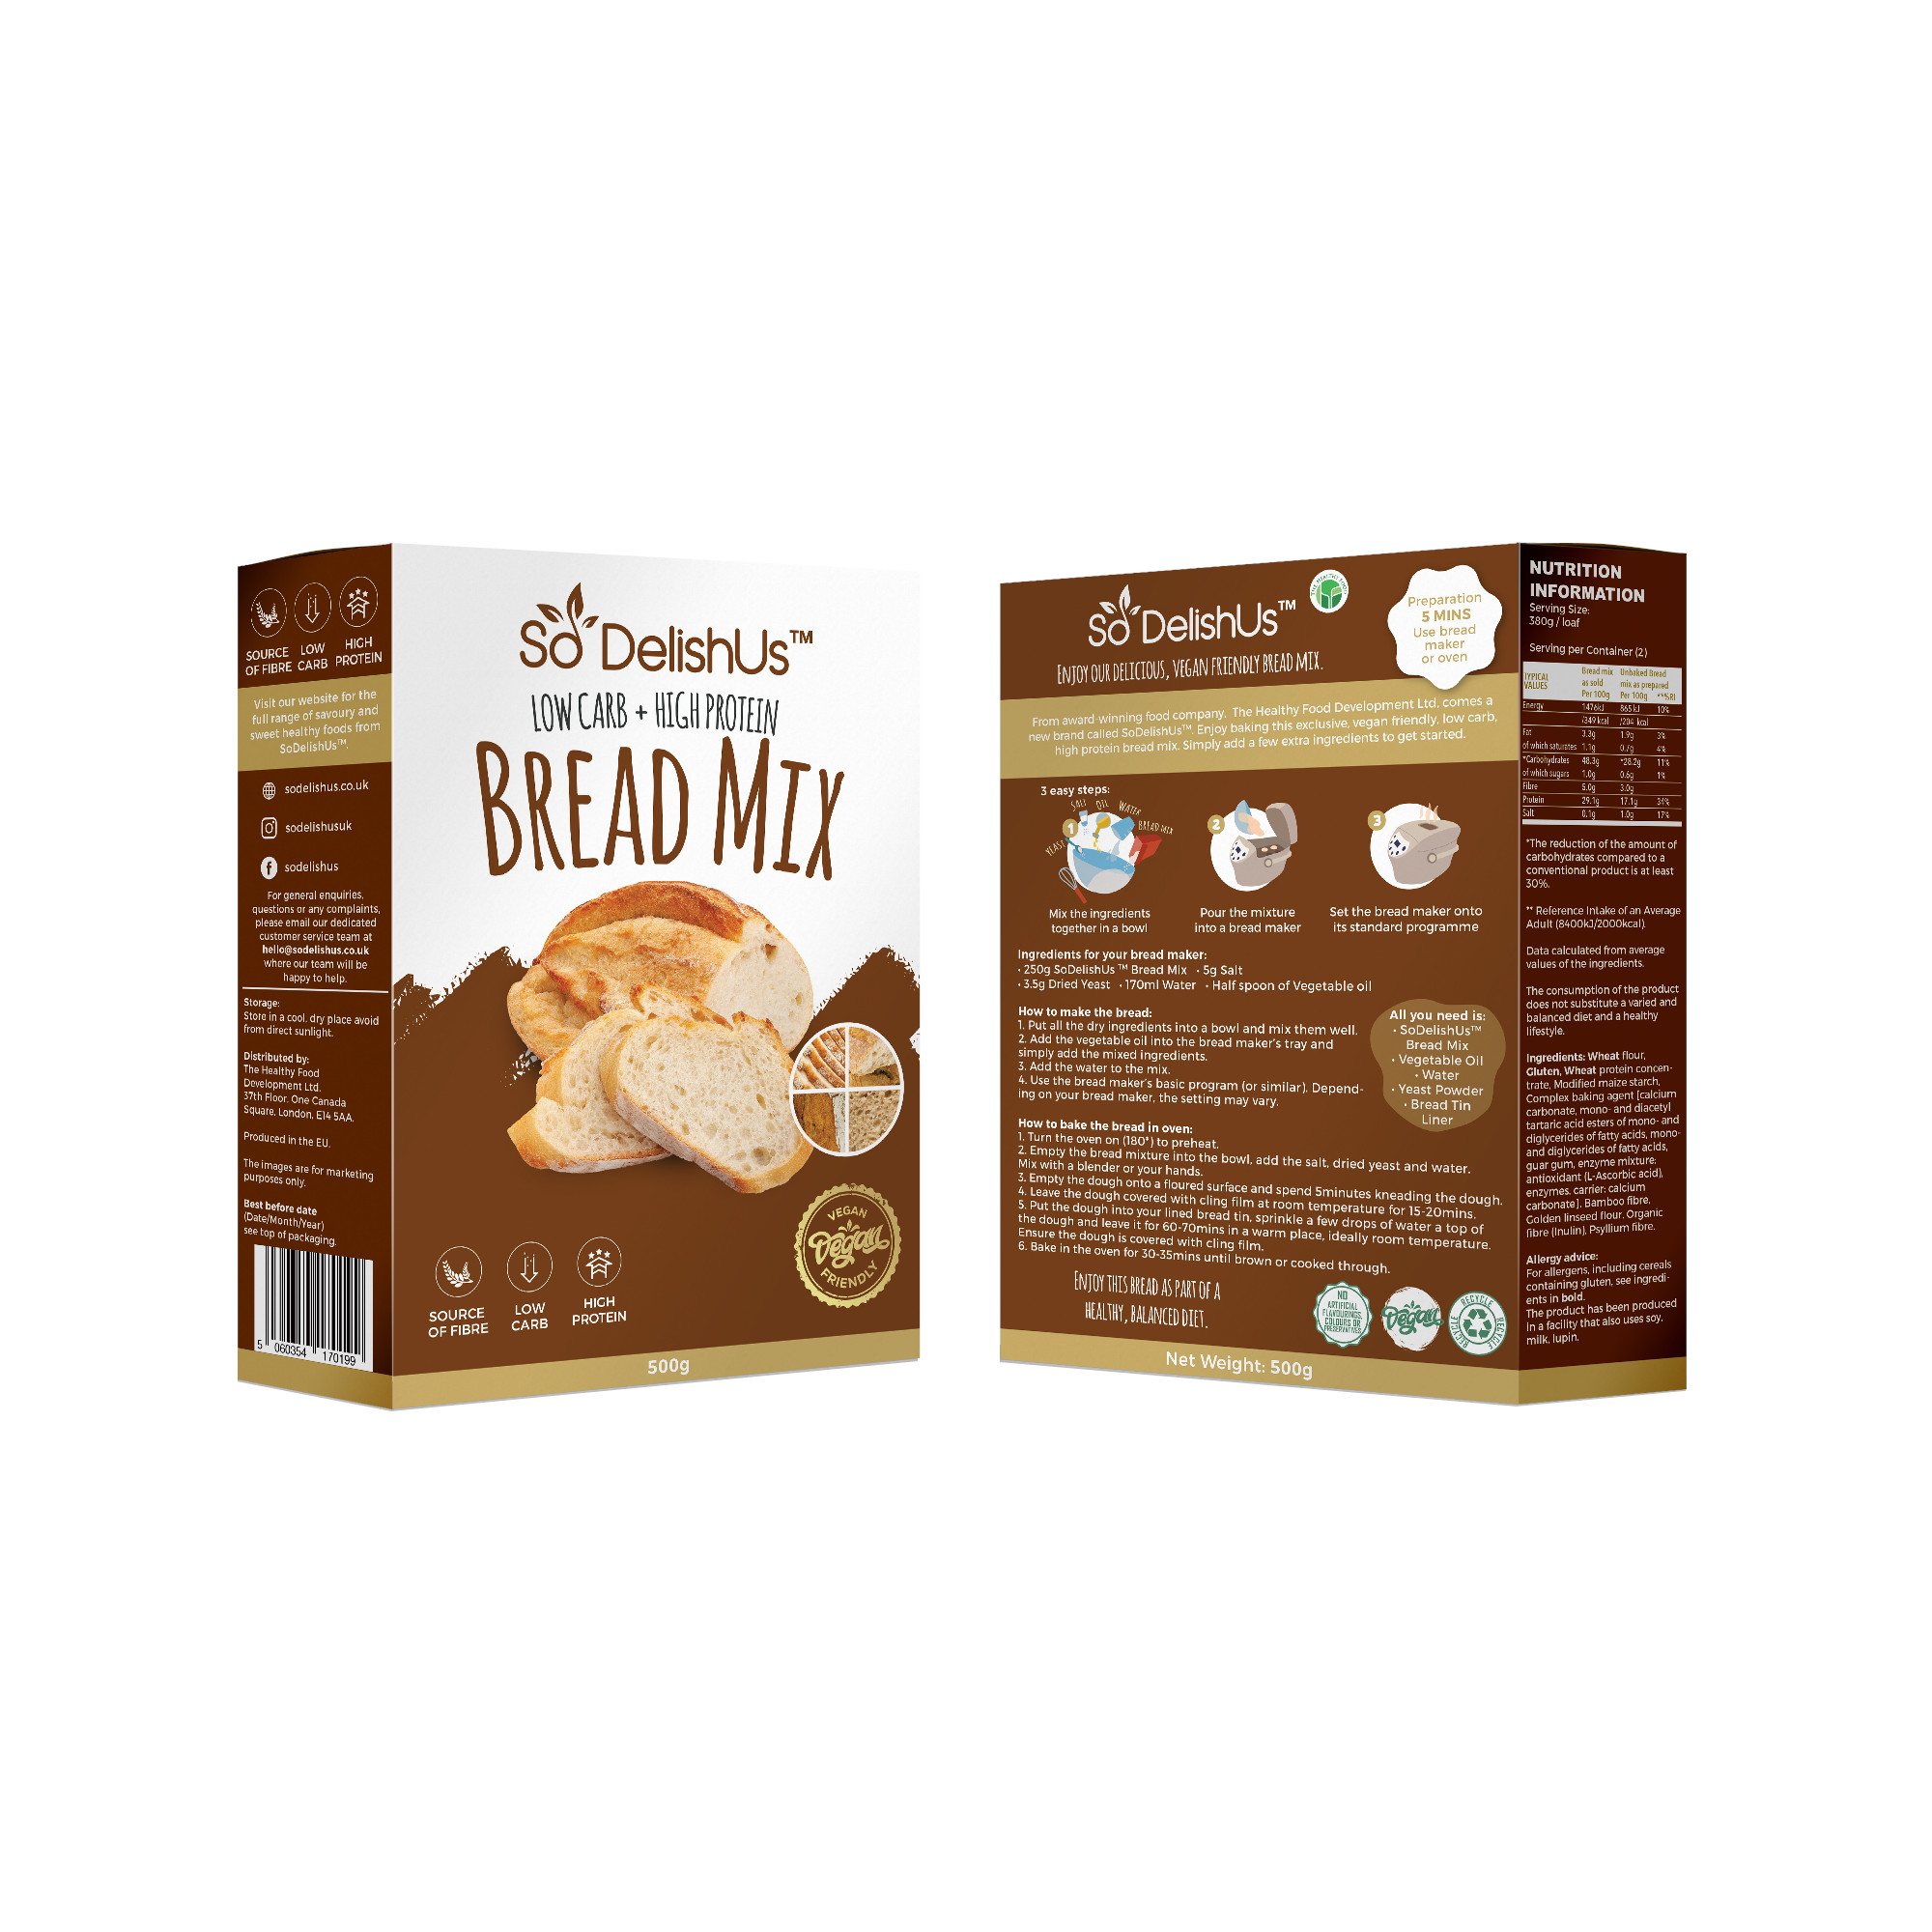 SoDelishUs szénhidrátcsökkentett kenyér lisztkeverék-Bread Mix 500g/ AKCIÓ! -10% kedvezménnyel kapható !